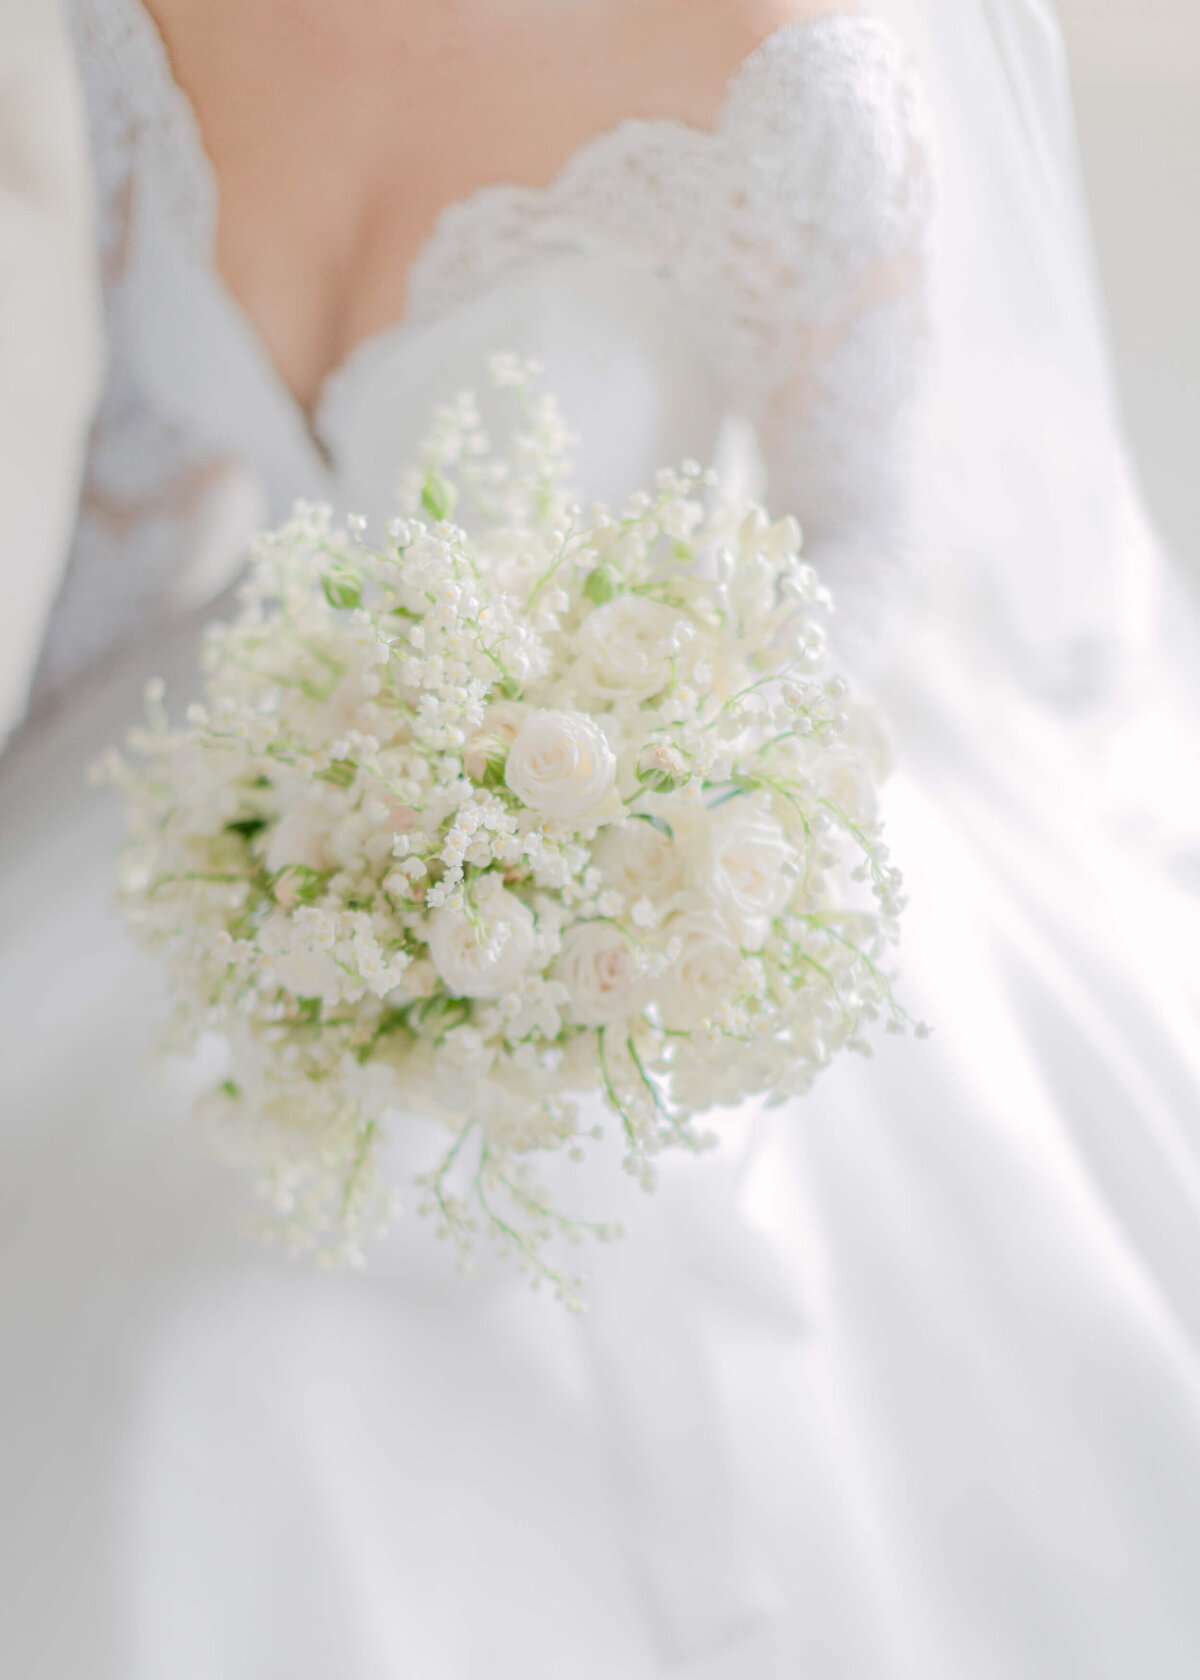 chloe-winstanley-weddings-suzanne-neville-john-carter-bouquet